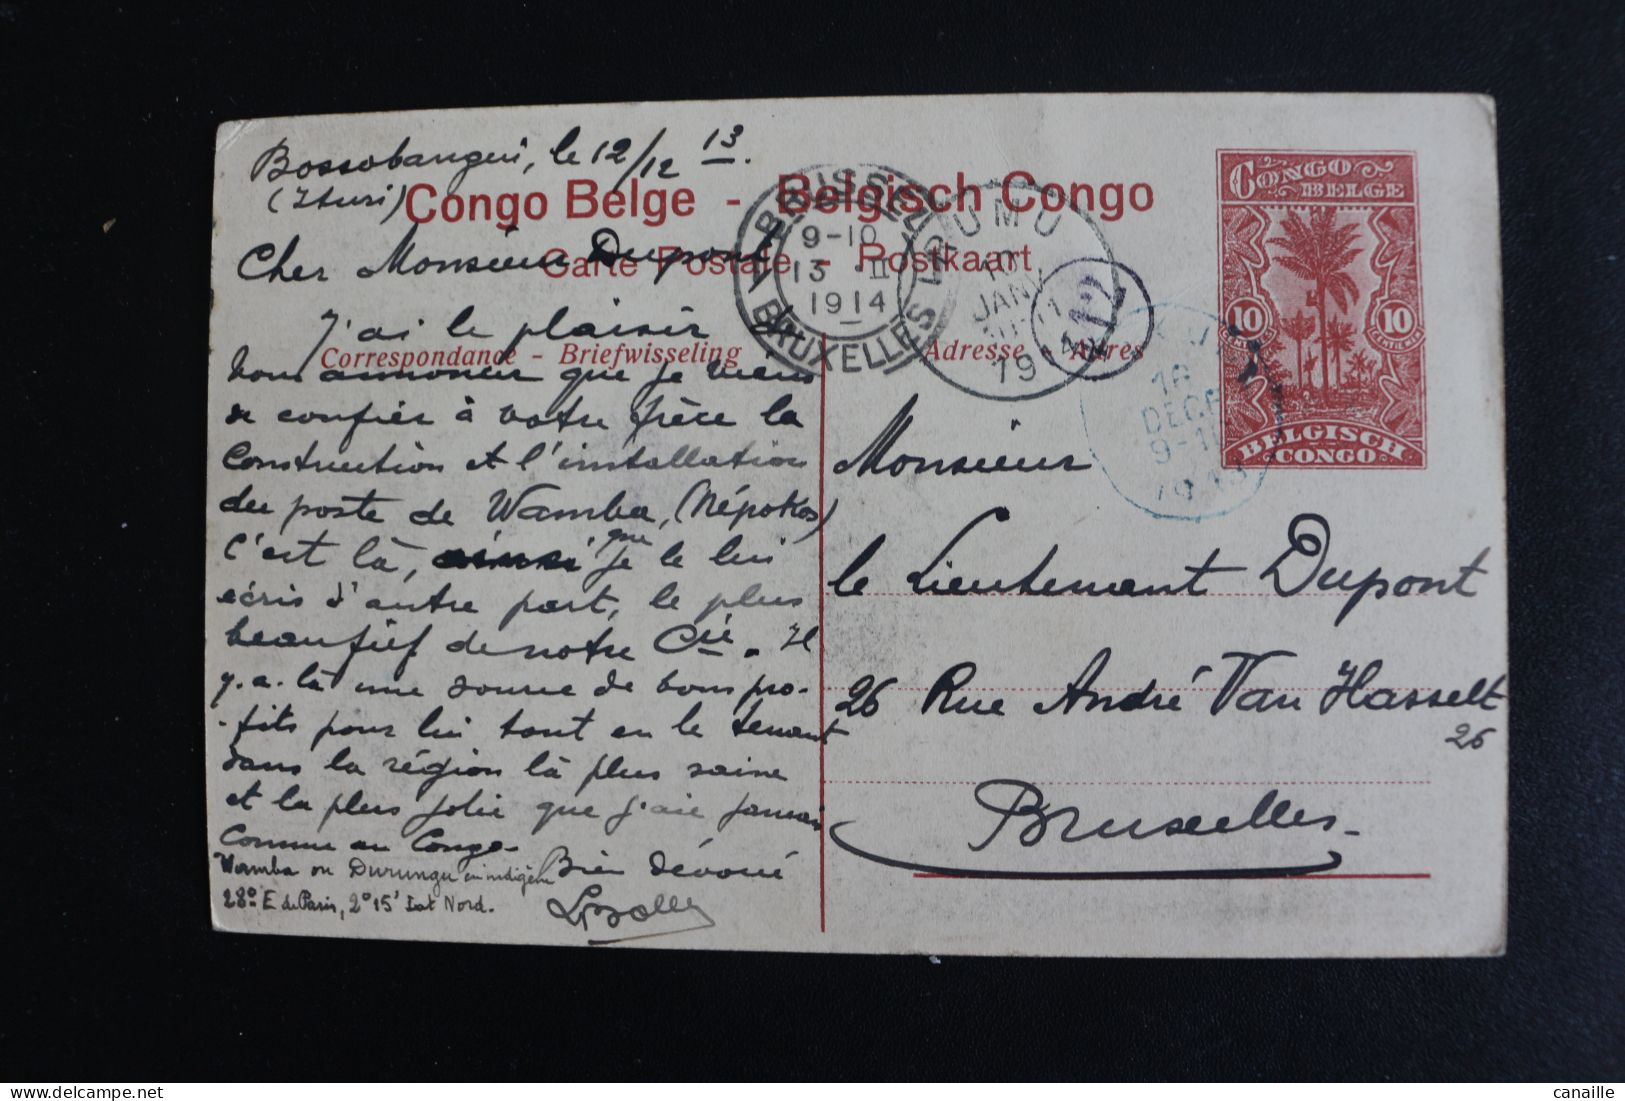 S-C 183 / Congo - Kinshasa (ex Zaire) - Congo Belge  -  Léopoldville Chameaux Porteurs  / 1914 - Kinshasa - Leopoldville